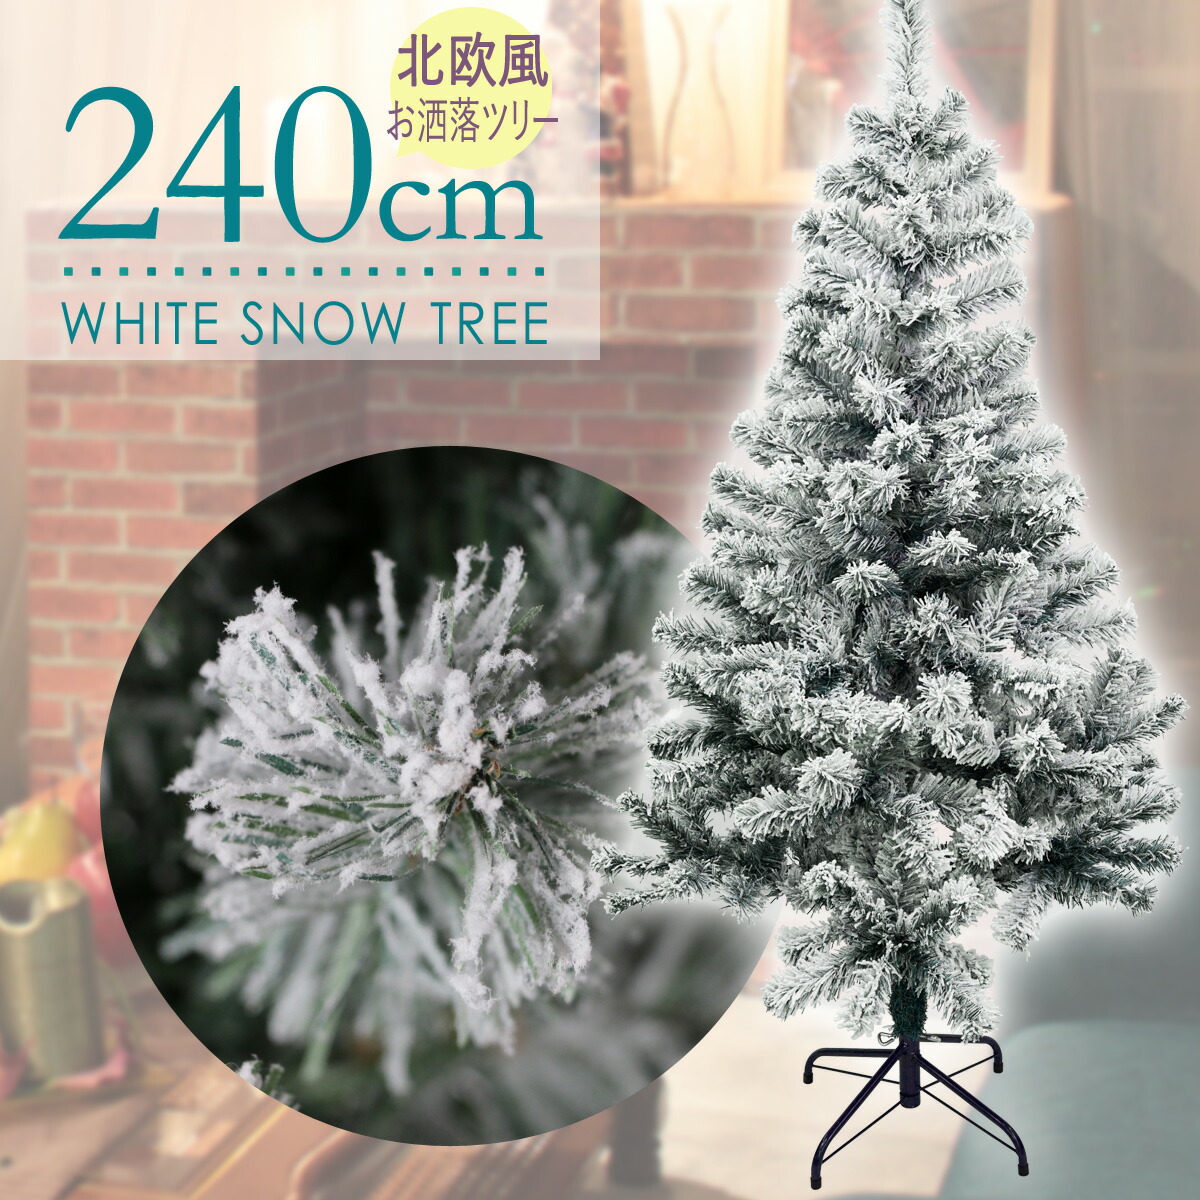 本物の雪が積もったような雪のクリスマスツリーです クリスマスツリー 240cm フロストツリー 業界No.1 雪付き フランクヒルズ 木 スノーツリー 人気上昇中 11月上旬入荷予定 業務用 大型ツリー おしゃれ 北欧 ヌードツリー 雪 ディスプレー